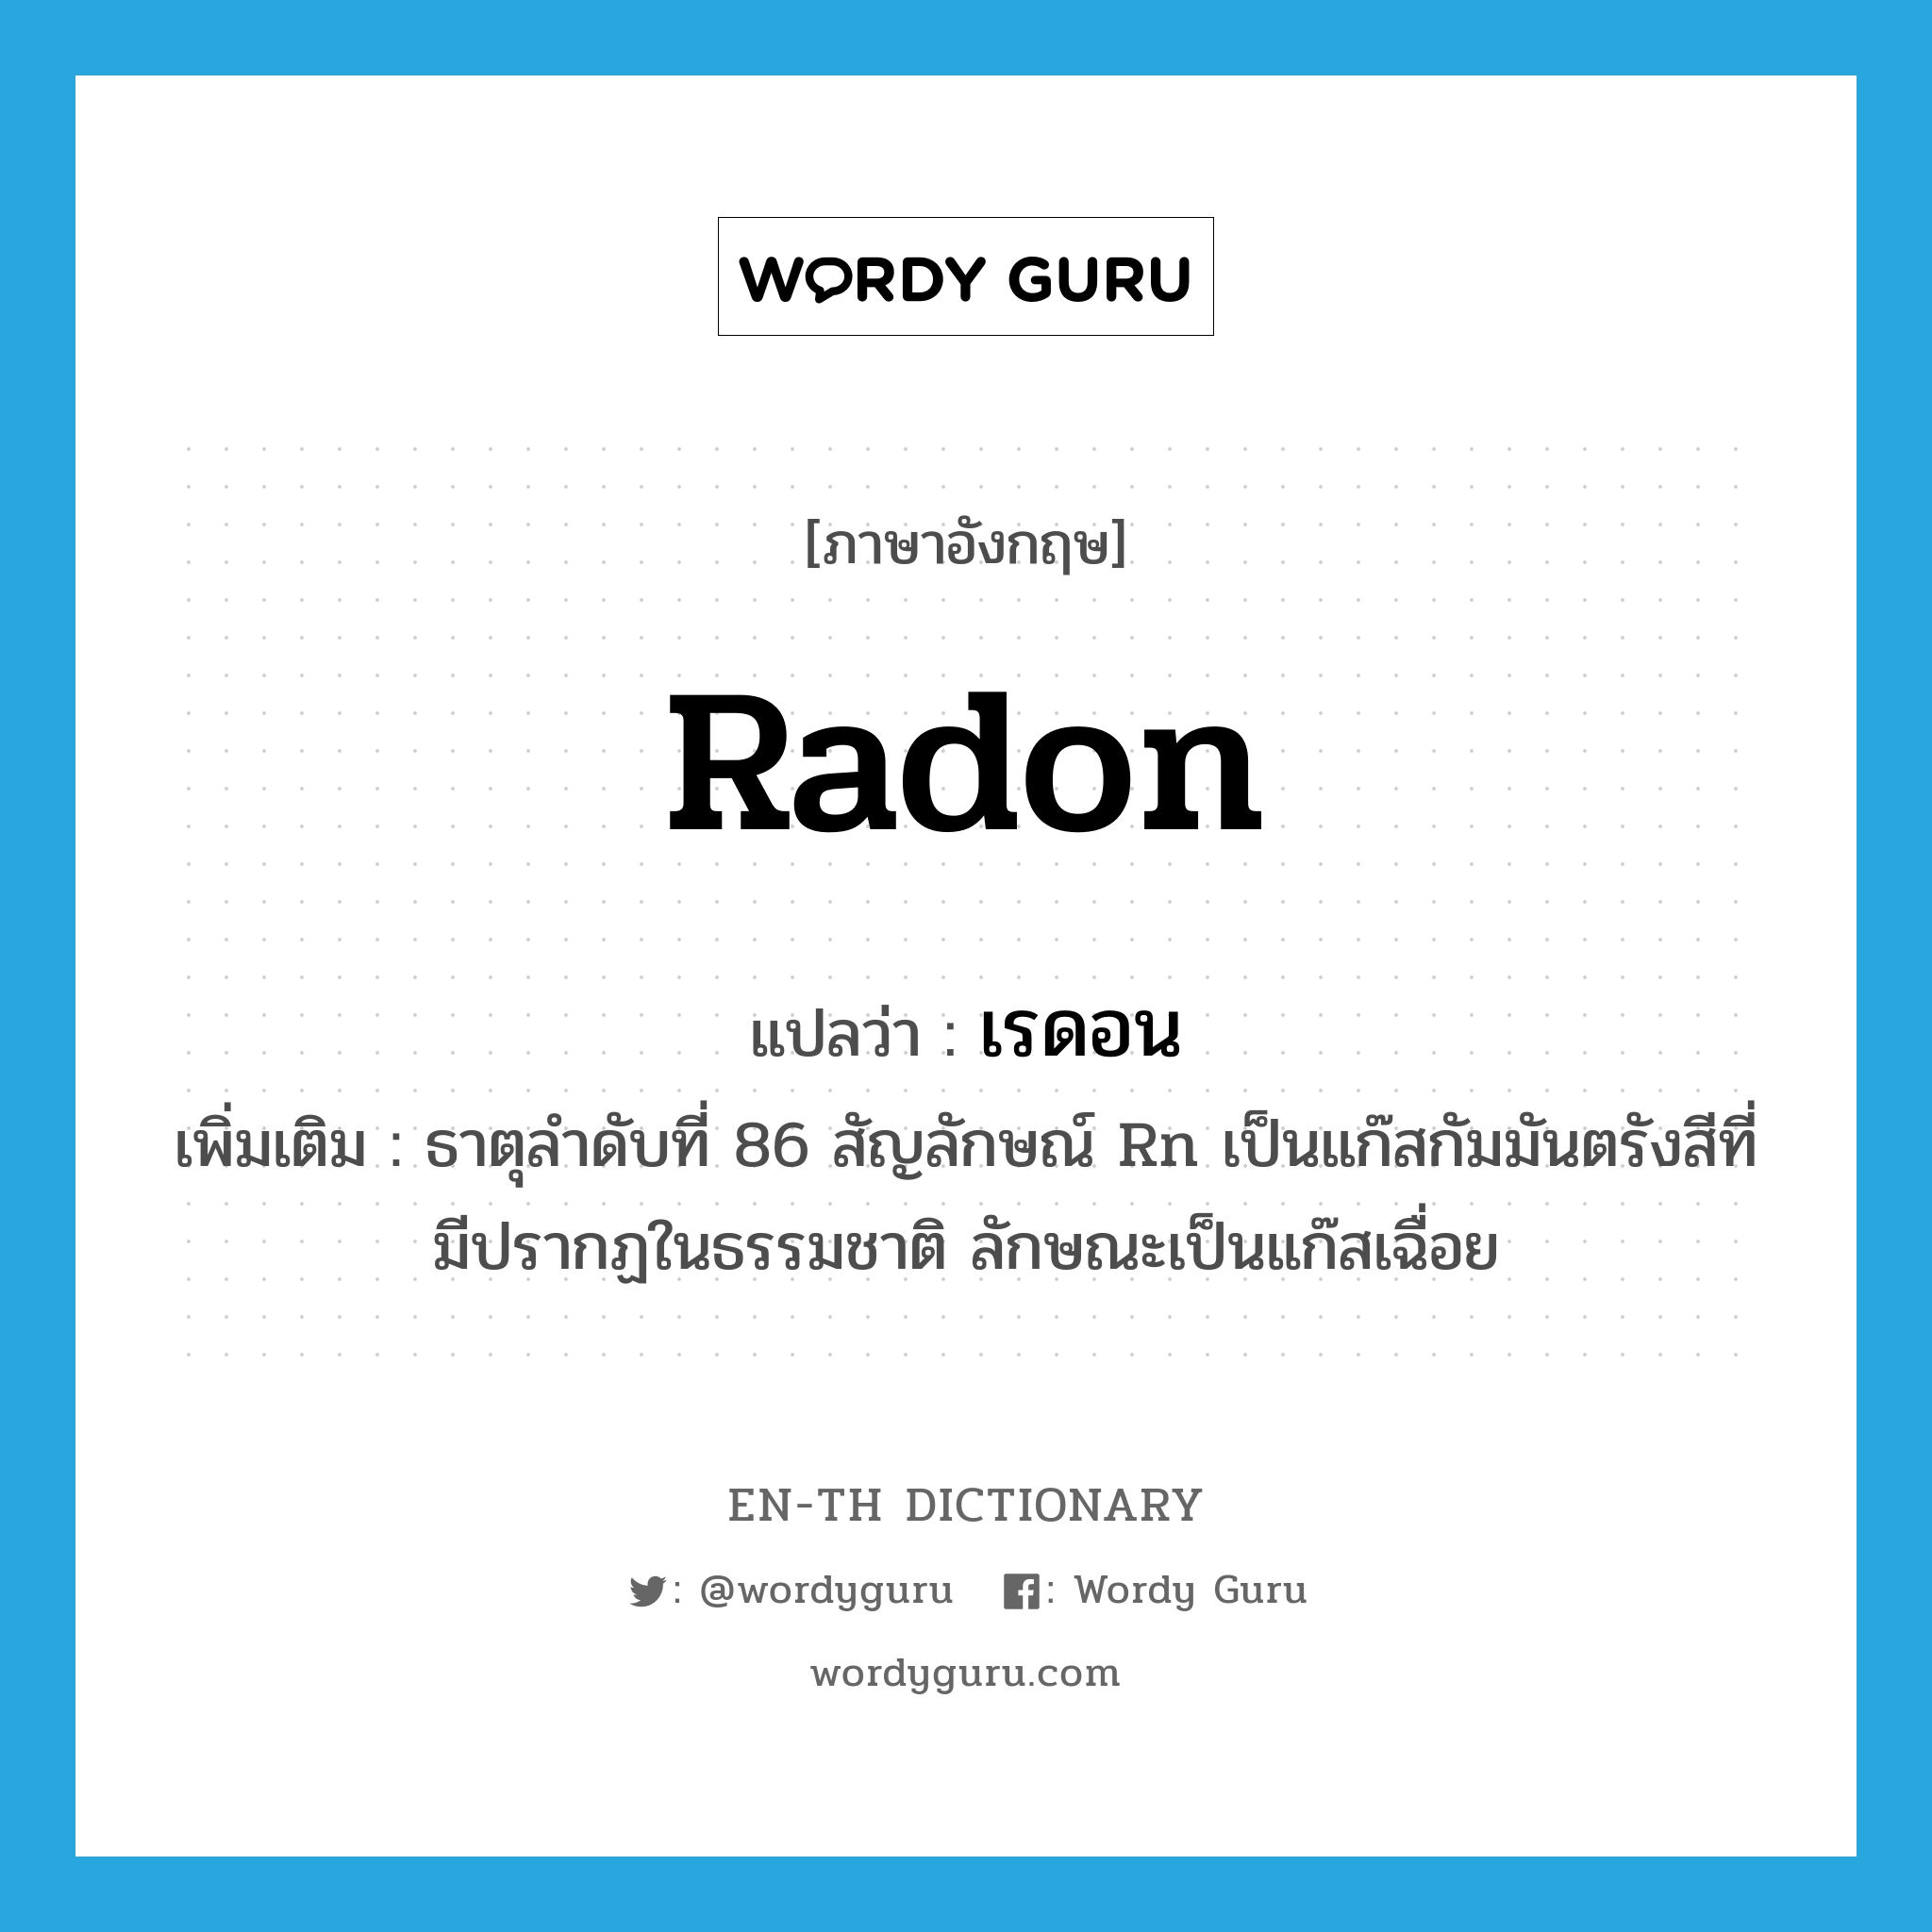 radon แปลว่า?, คำศัพท์ภาษาอังกฤษ radon แปลว่า เรดอน ประเภท N เพิ่มเติม ธาตุลำดับที่ 86 สัญลักษณ์ Rn เป็นแก๊สกัมมันตรังสีที่มีปรากฏในธรรมชาติ ลักษณะเป็นแก๊สเฉื่อย หมวด N